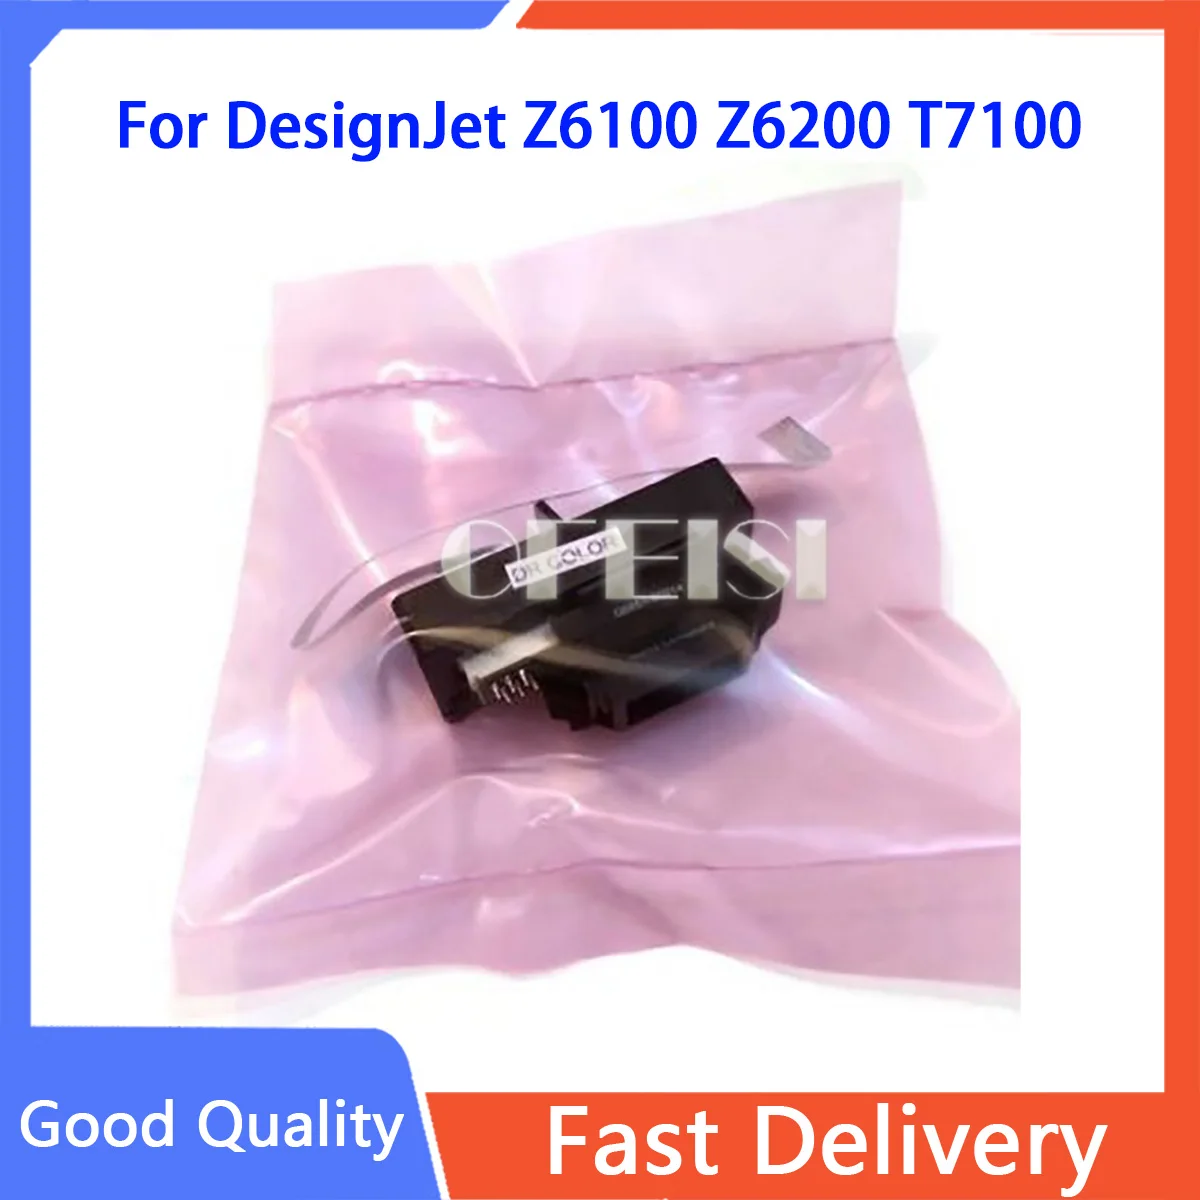 

CQ105-60130 Q6651-60297 Line sensor for DesignJet Z6100 Z6200 T7100 T7200 L25500 4000 4020 4500 Carriage lamp plotter parts